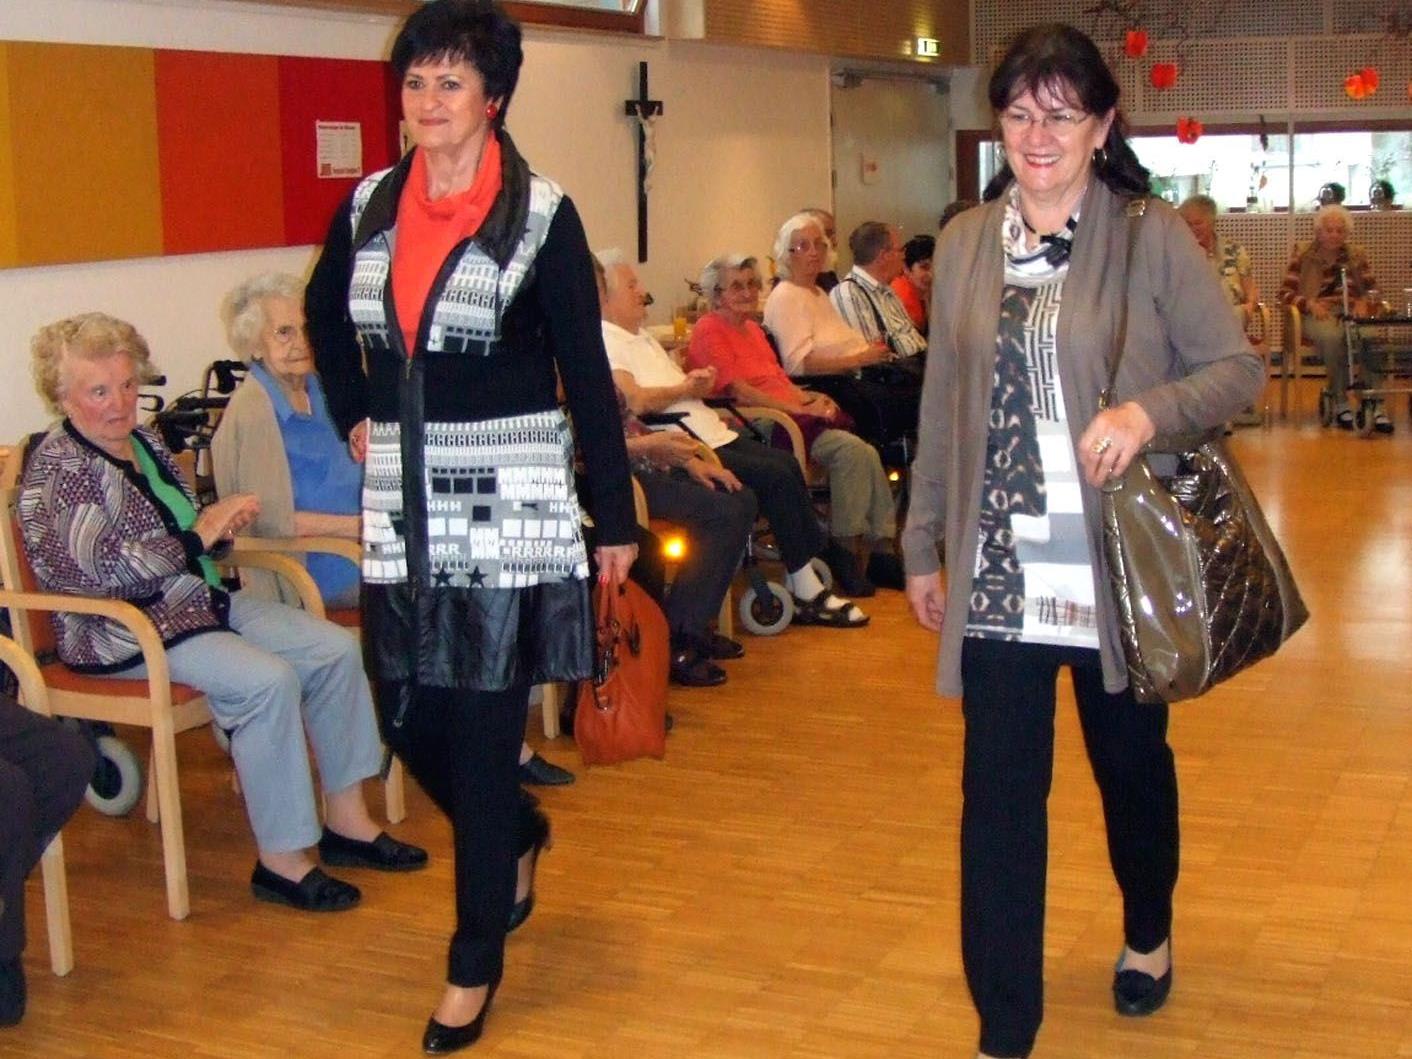 Professionelle Seniorenmodels präsentierten die neuesten Trends der Dornbirner Firma Marchetti.